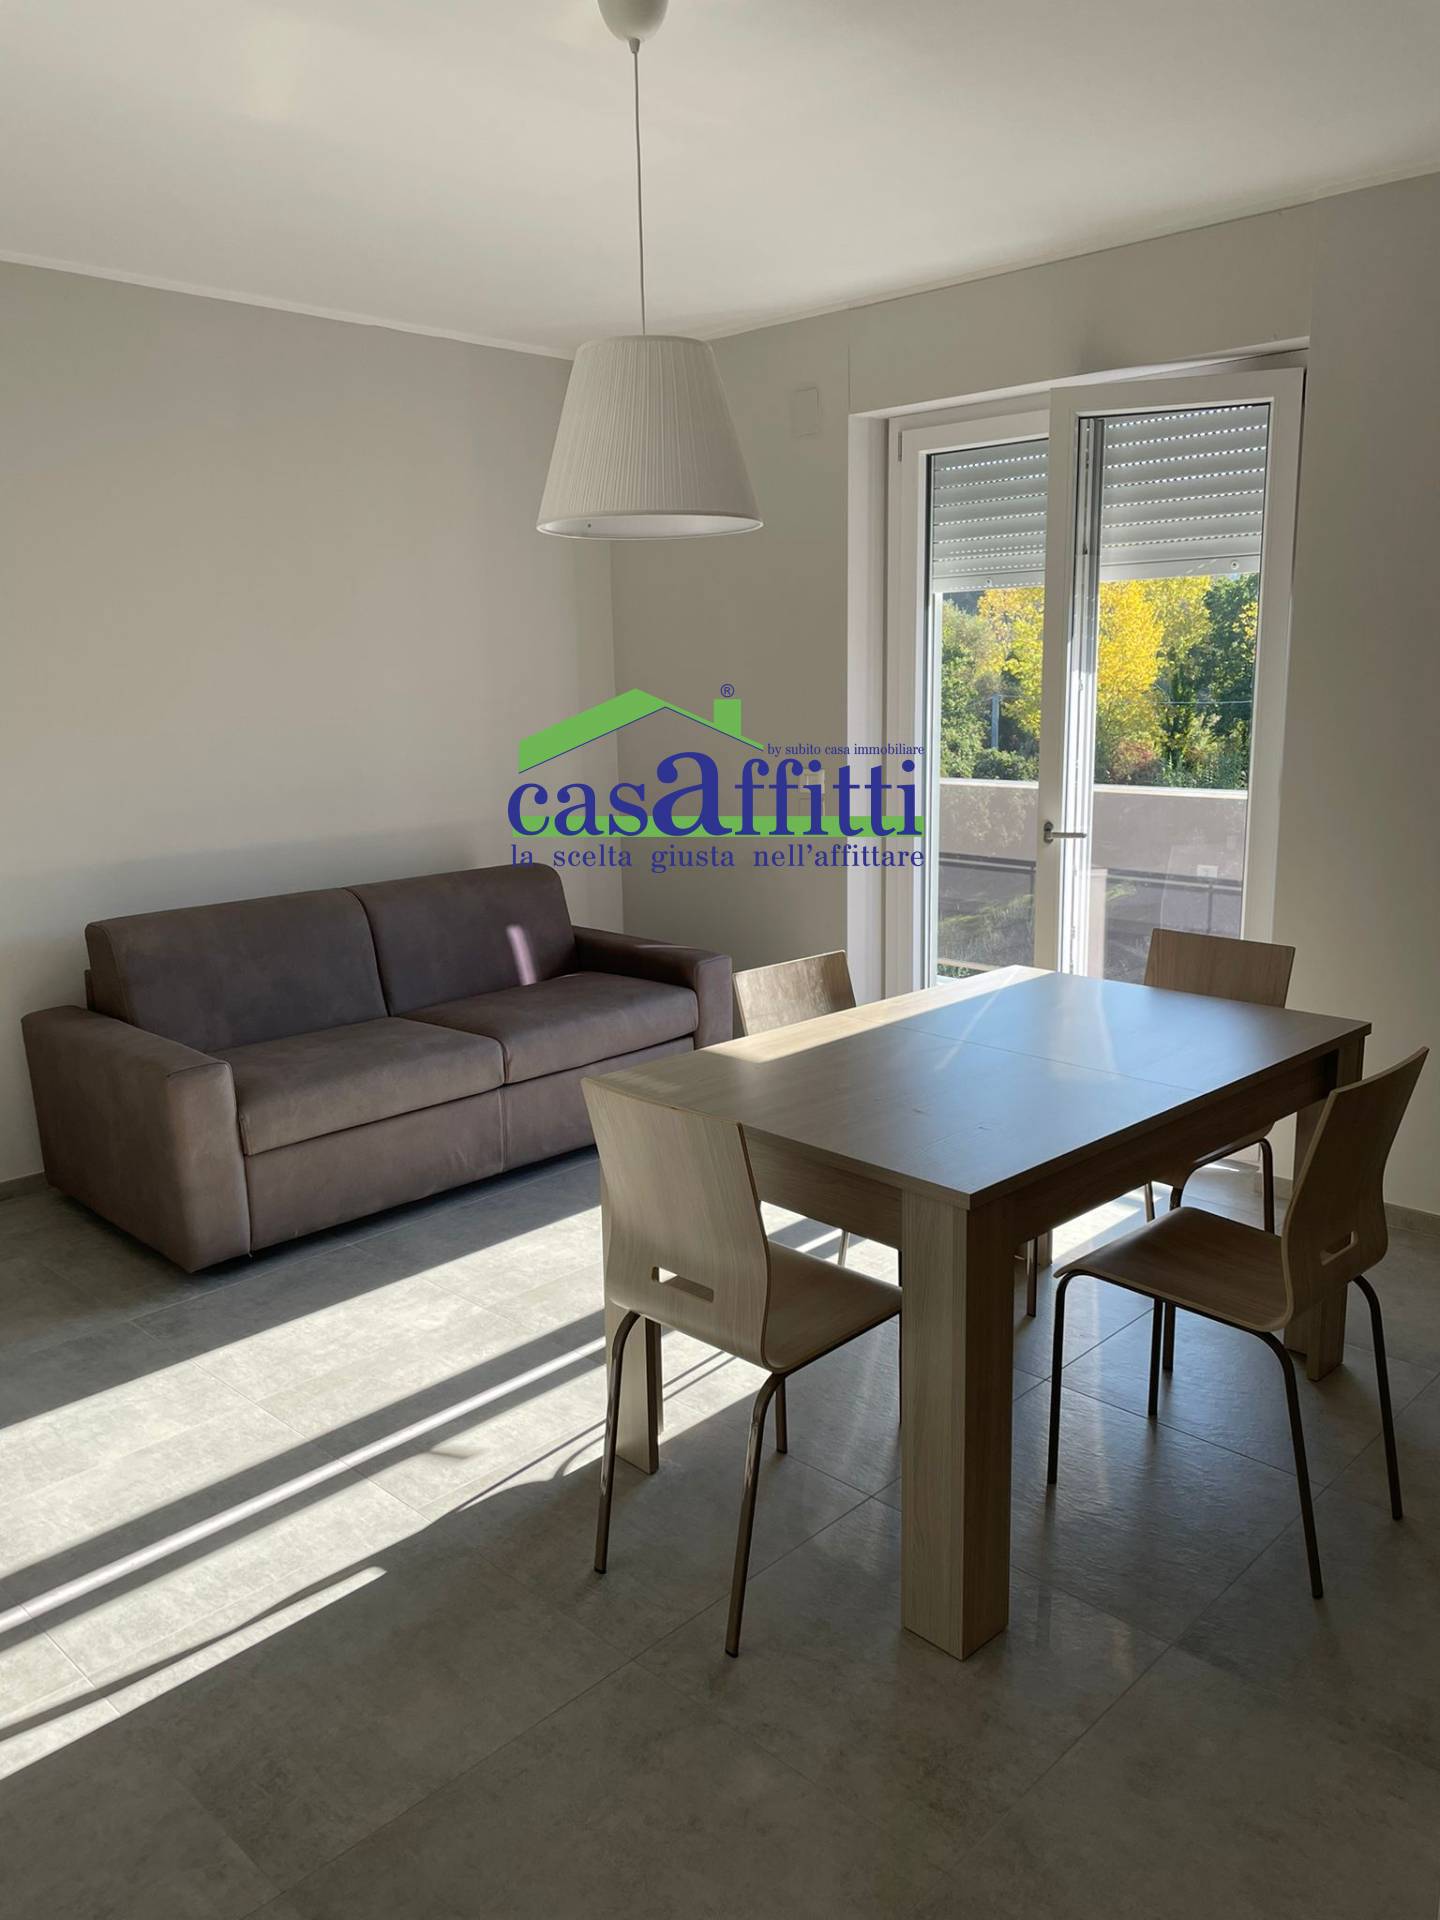 Appartamento in vendita a Chieti, 3 locali, zona Località: zonauniversitaria, prezzo € 135.000 | PortaleAgenzieImmobiliari.it